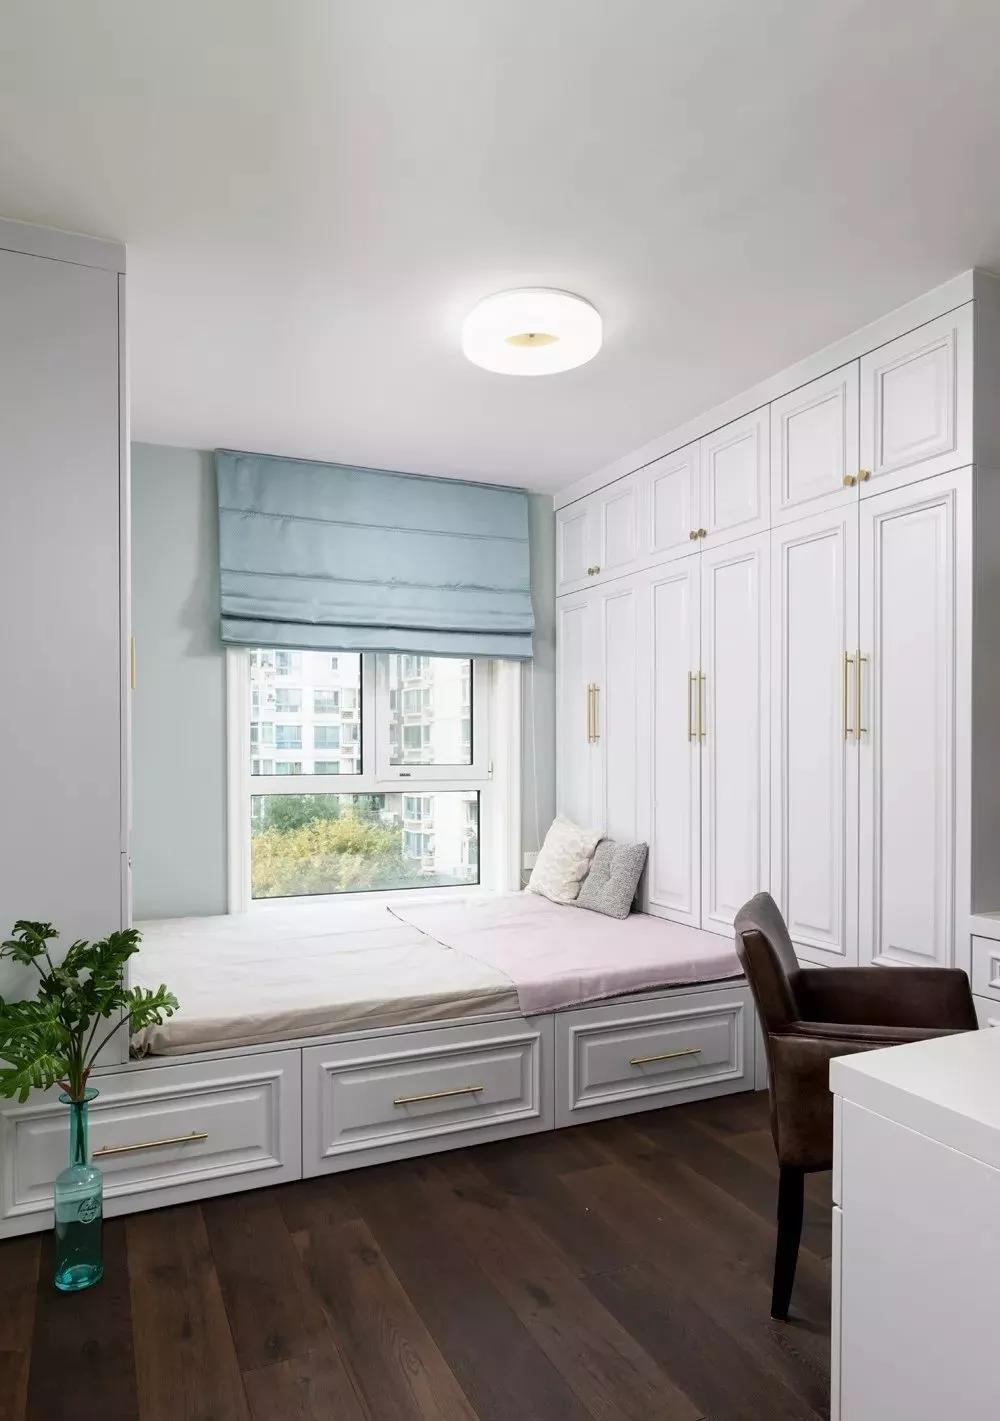 白色地台床、衣柜、一体化设计，在整体白色的基调上，蓝色窗帘成为点缀。